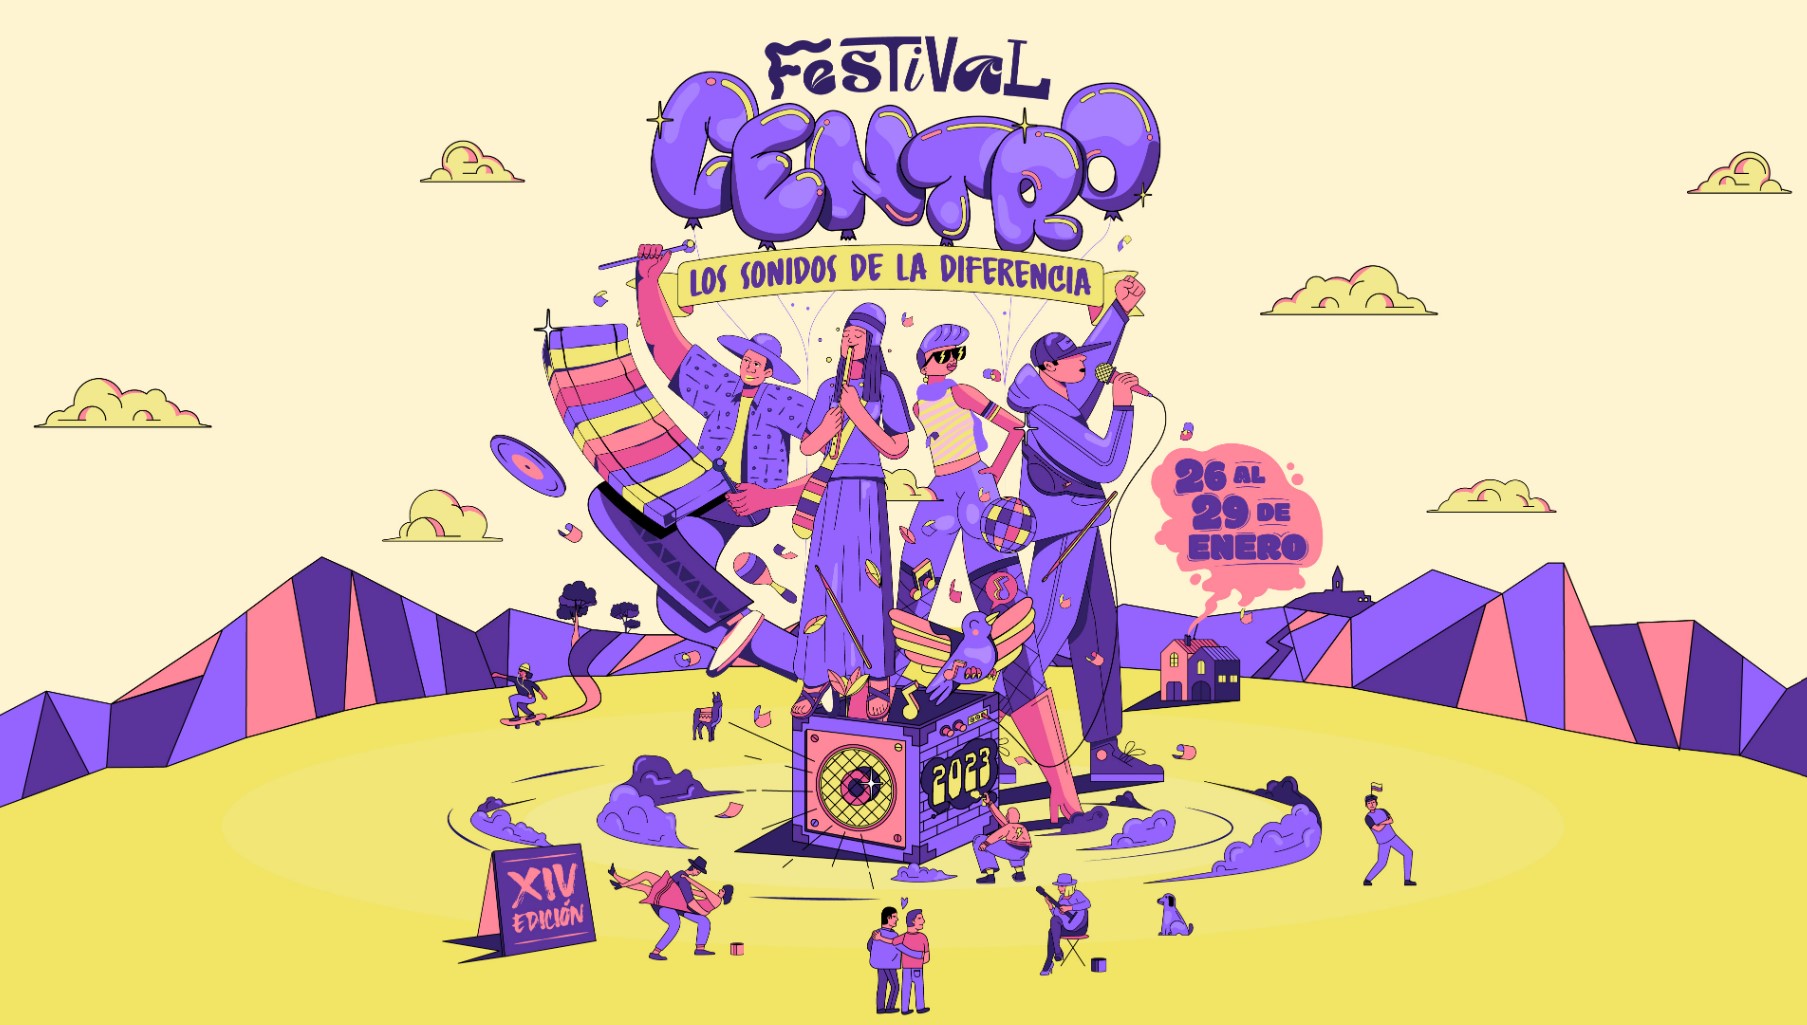 El Festival Centro celebra su decimocuarta edición del 26 al 29 de enero. Imagen: Festival Centro.